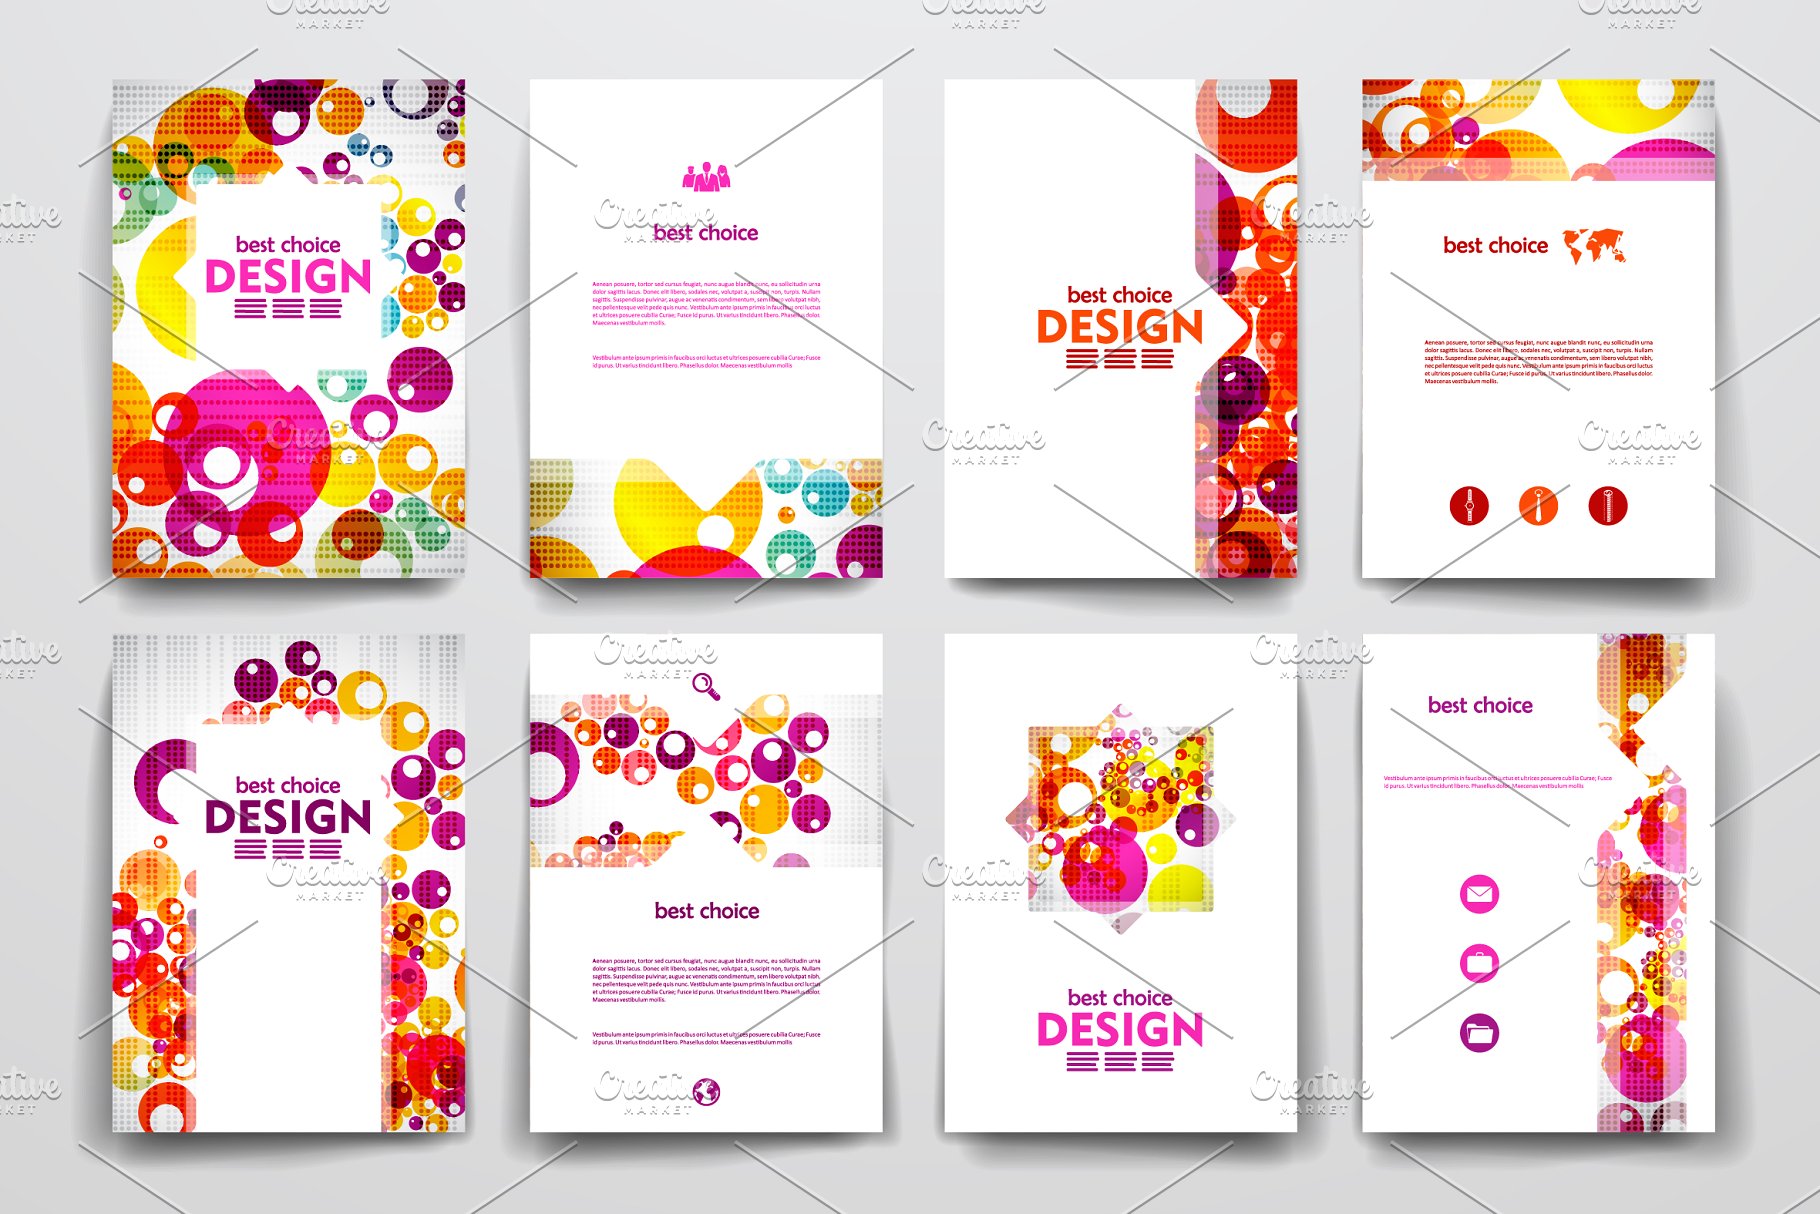 一套彩色抽象风格小册子模板  Colourful brochure templates插图